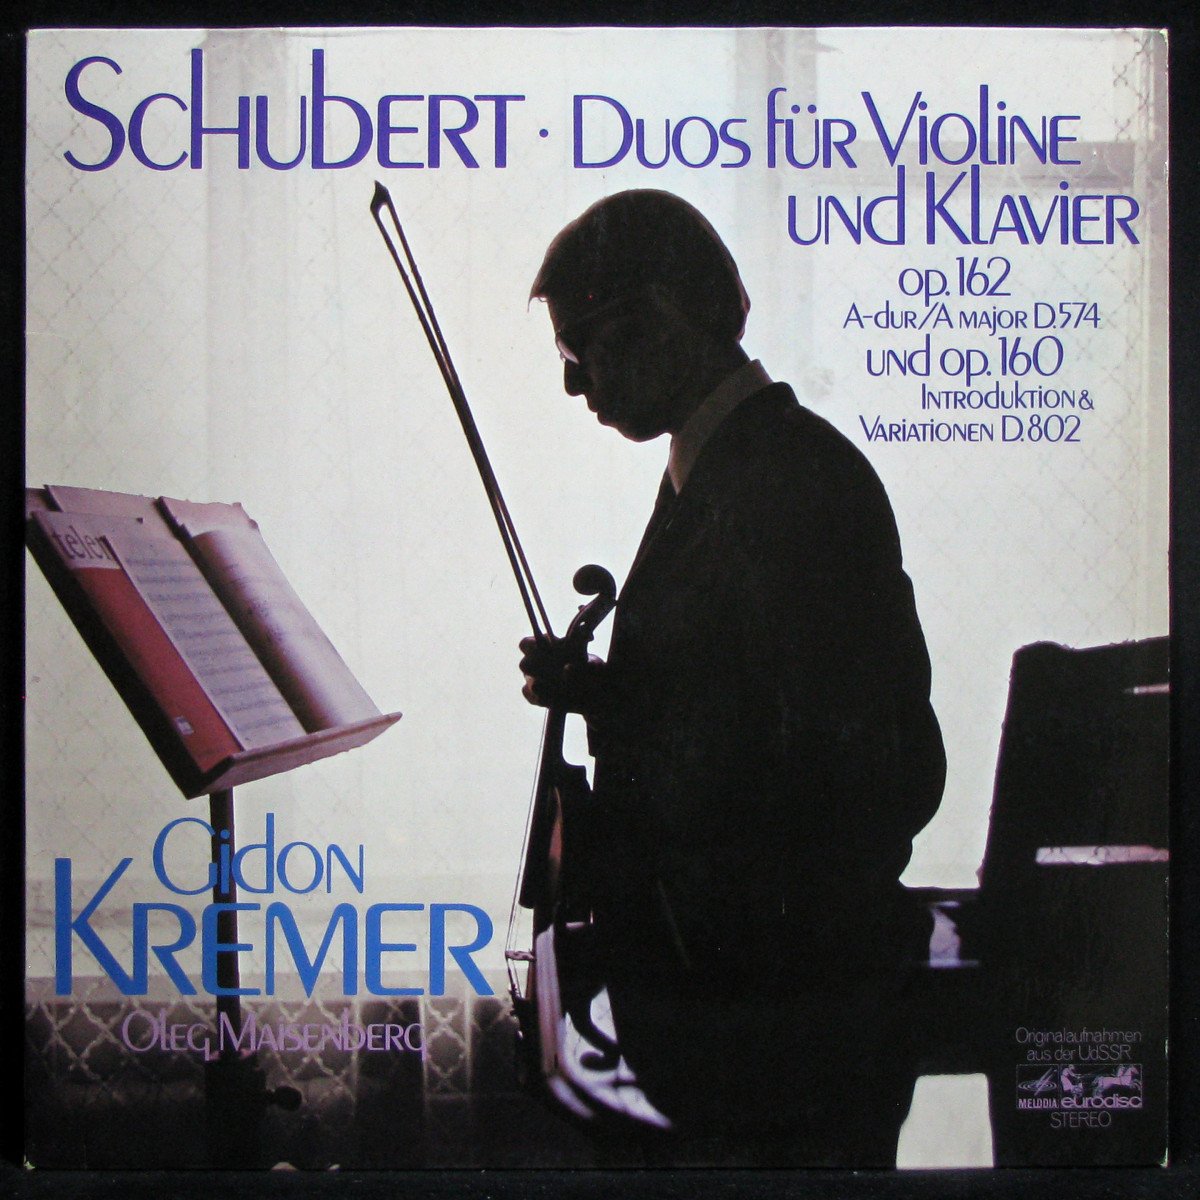 LP Gidon Kremer / Oleg Maisenberg — Schubert: Duos Fur Violine Und Klavier Op. 162 A-dur D. 574 Und Op. 160 Introduktion & Variationen D. 802 фото